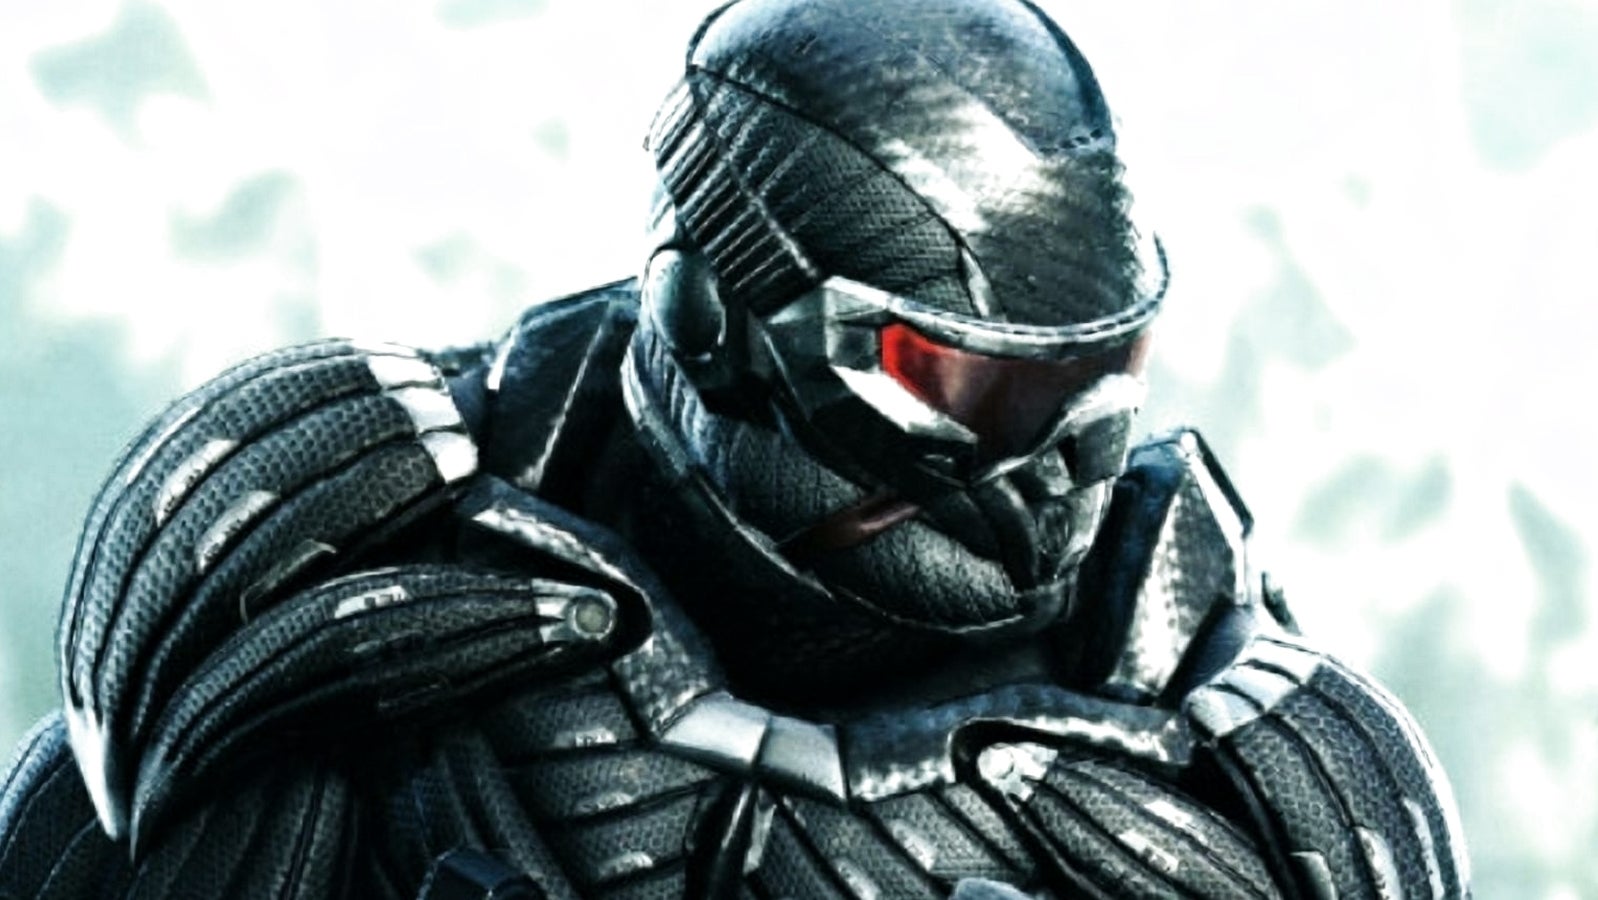 Bilder zu Crysis Remastered hat auf der Xbox One X massive Probleme